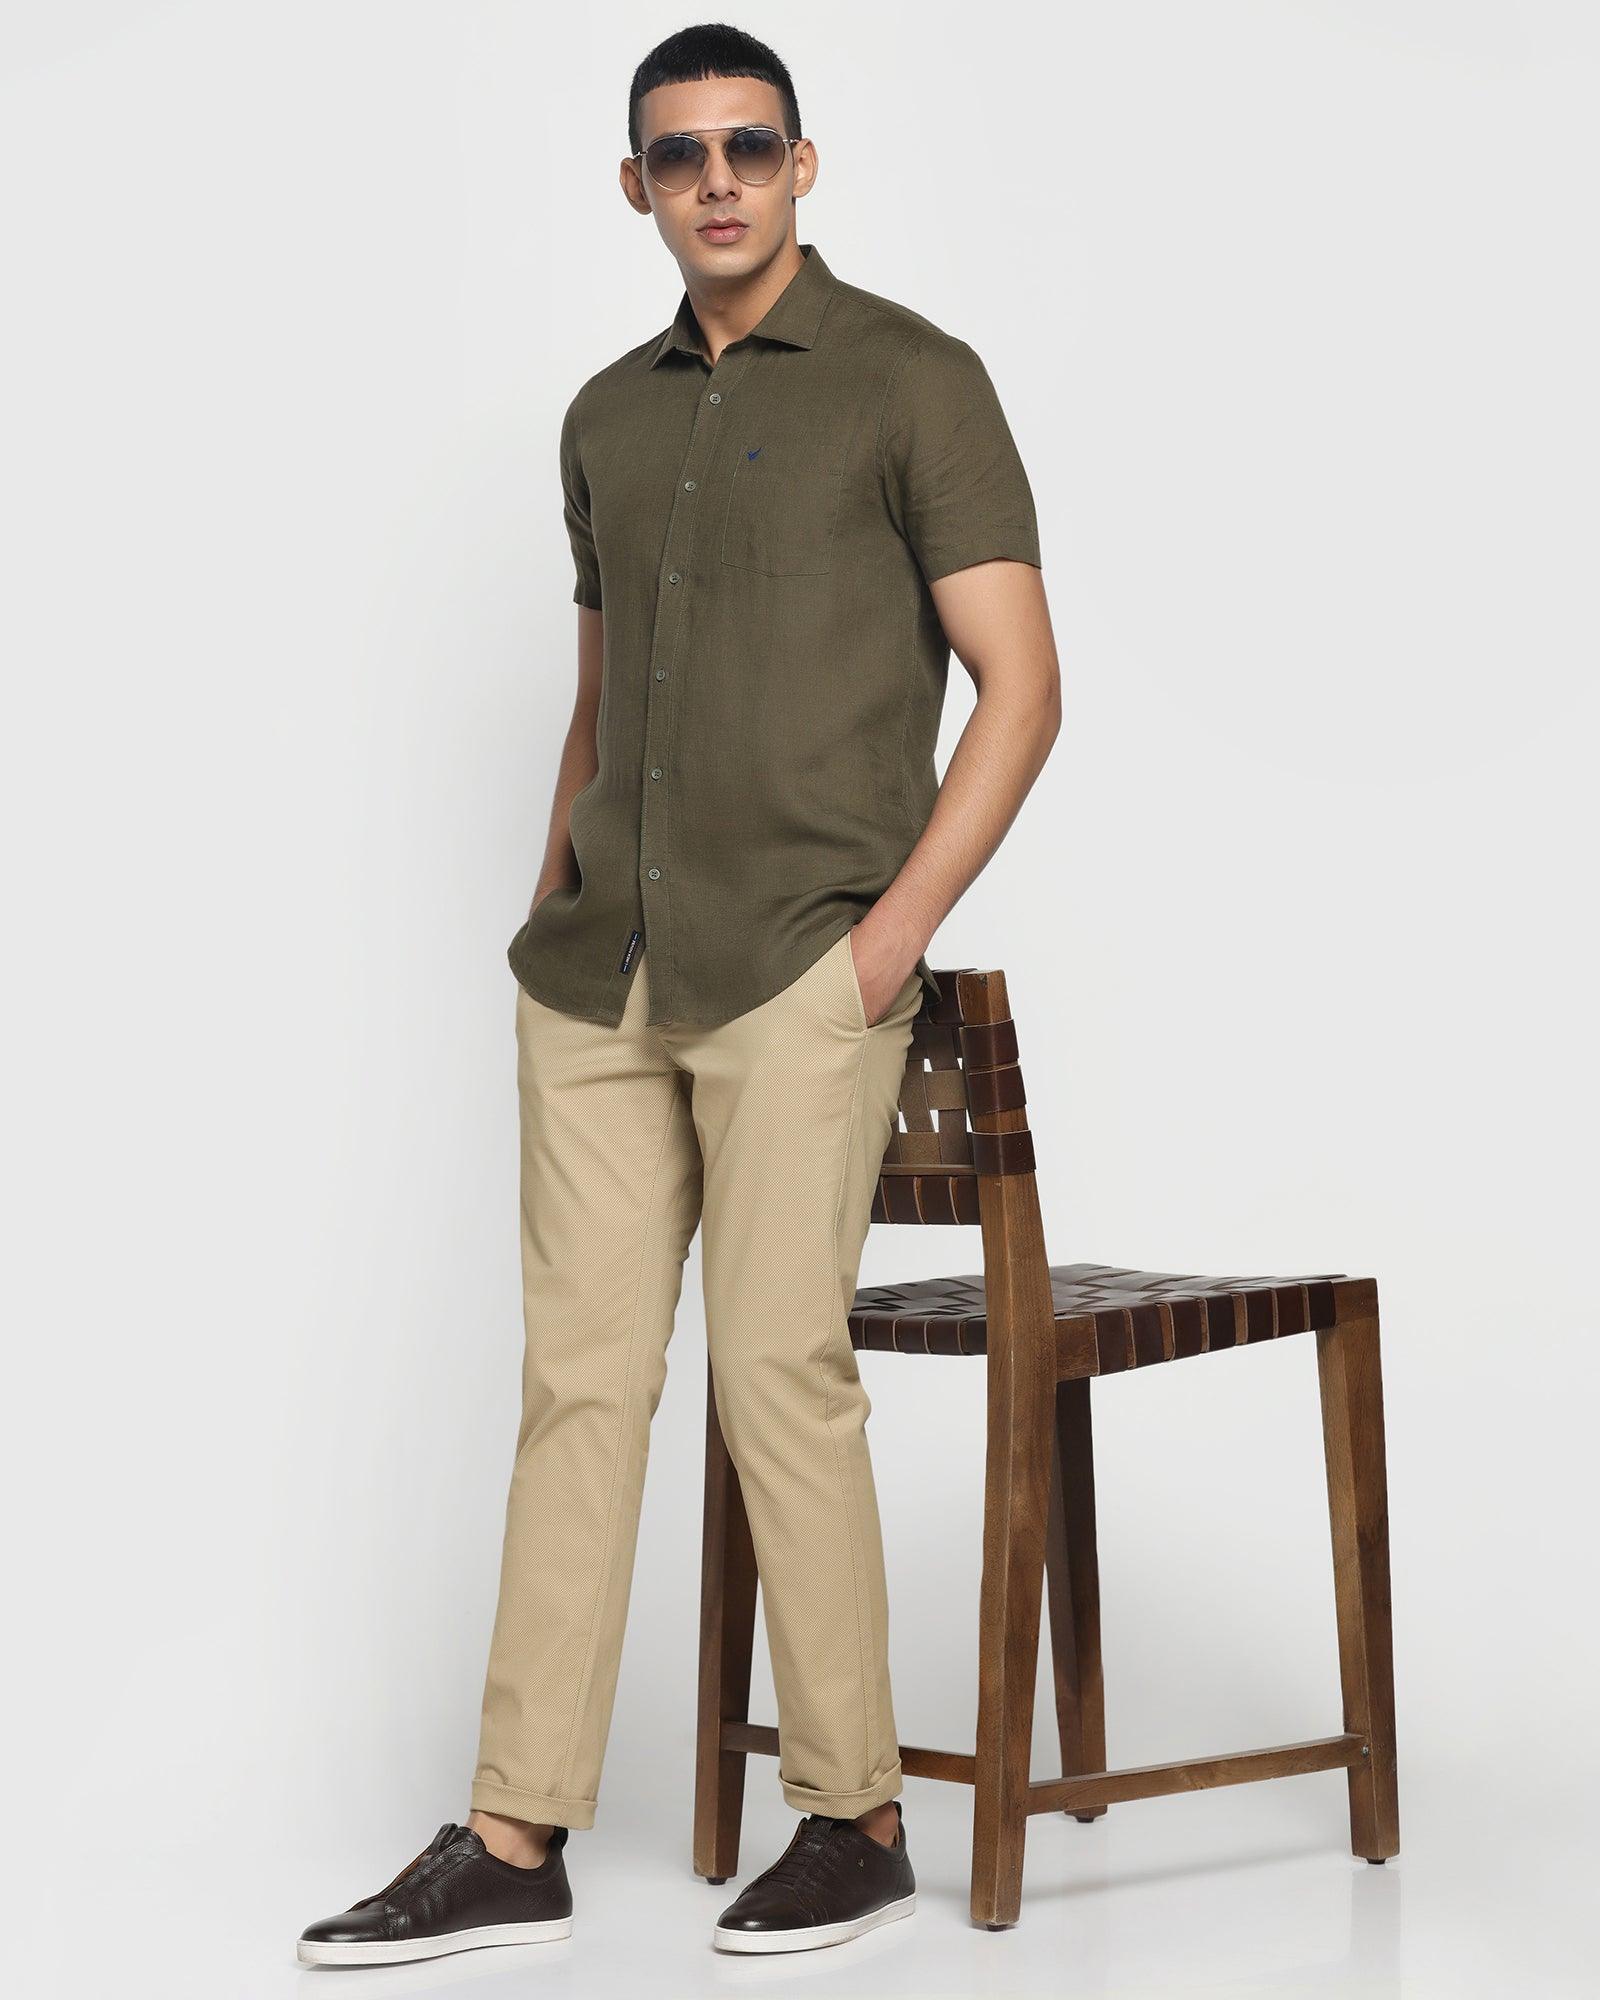 Linen Formal Half Sleeve Olive Solid Shirt - Bowen